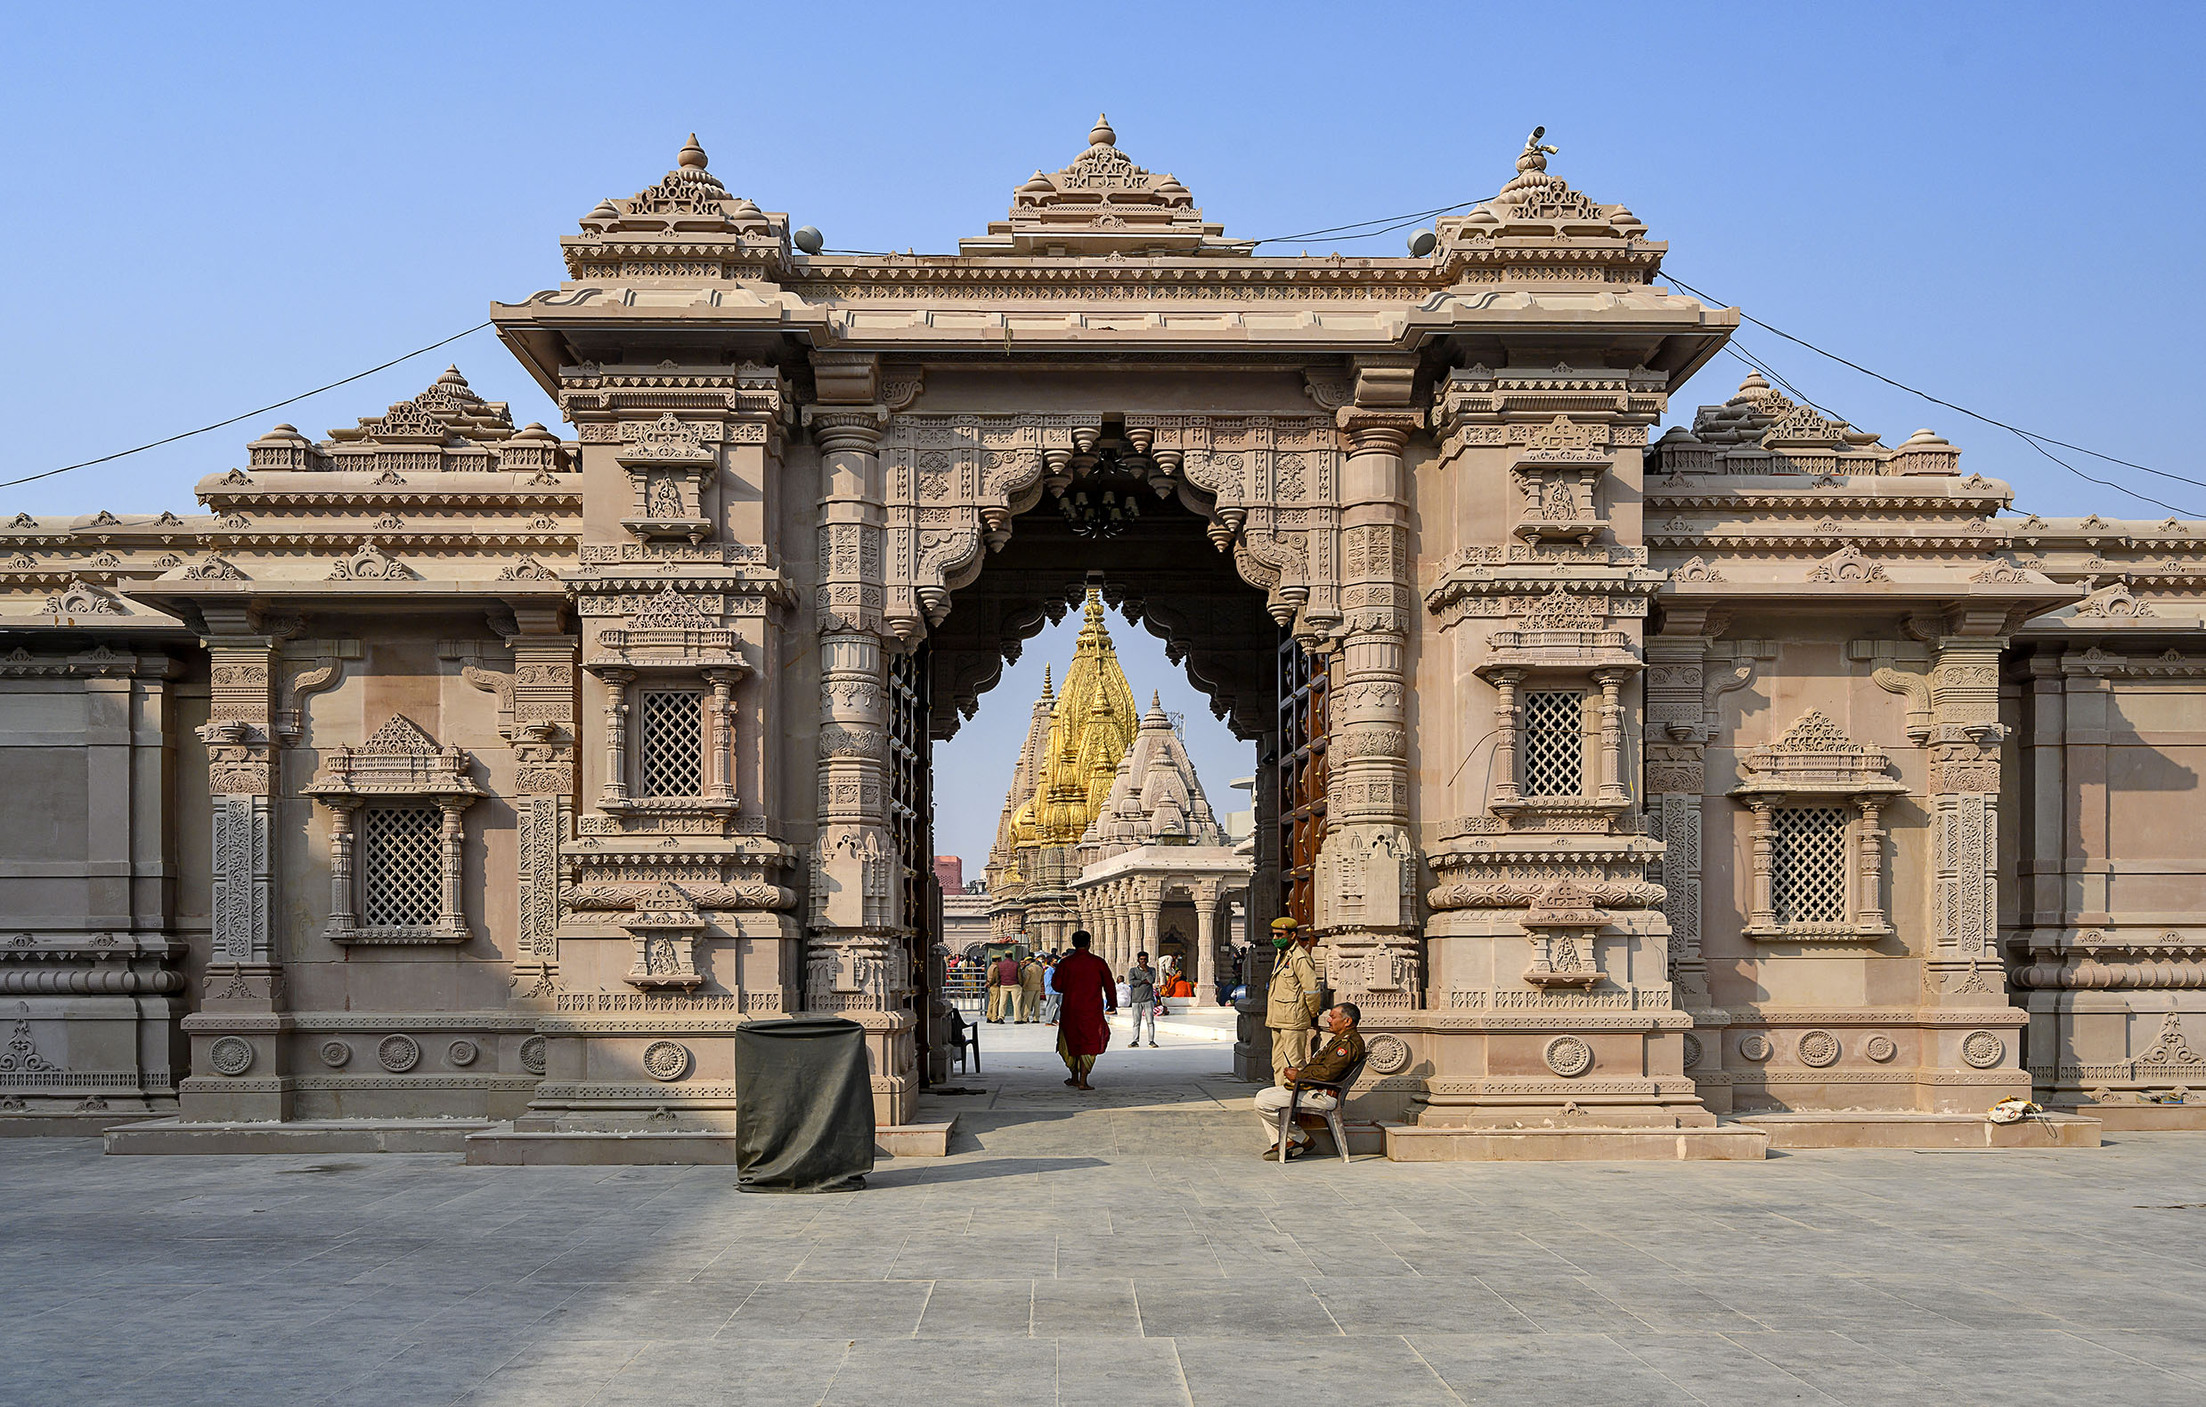 Shri Kashi Vishwanath Temple